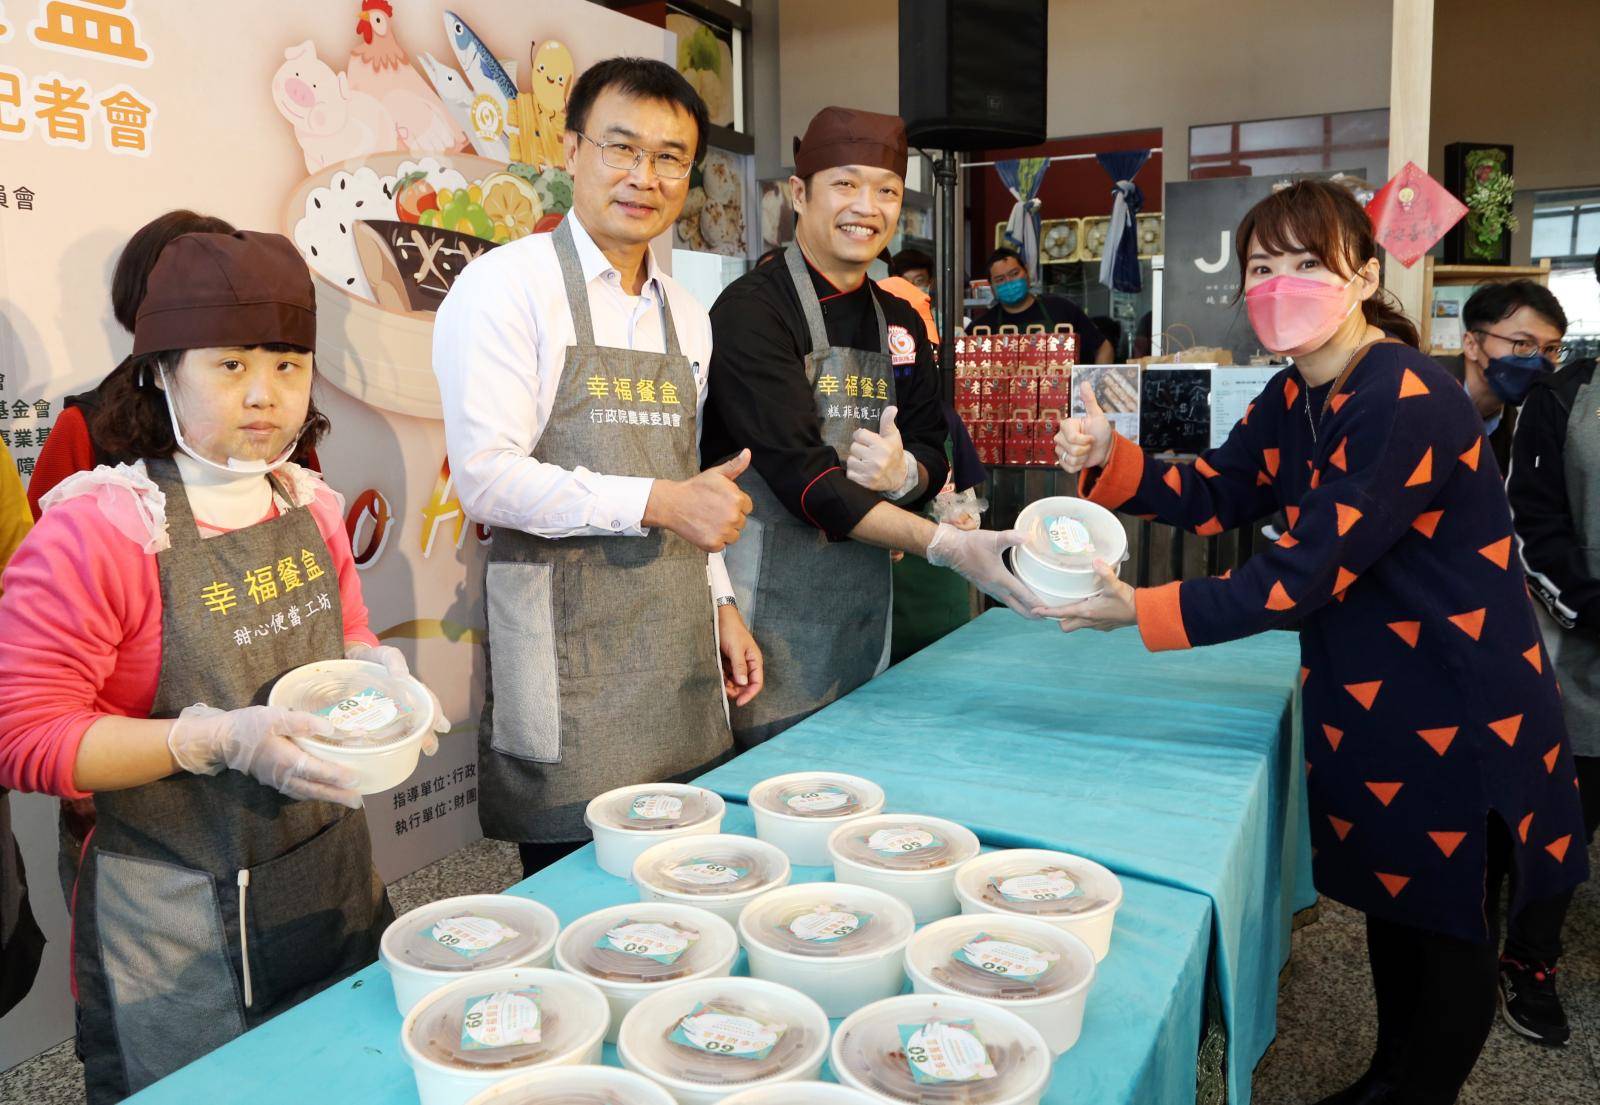 農委會宣布在台北45間全聯、雙北30間家樂福上架「60元幸福餐盒」。